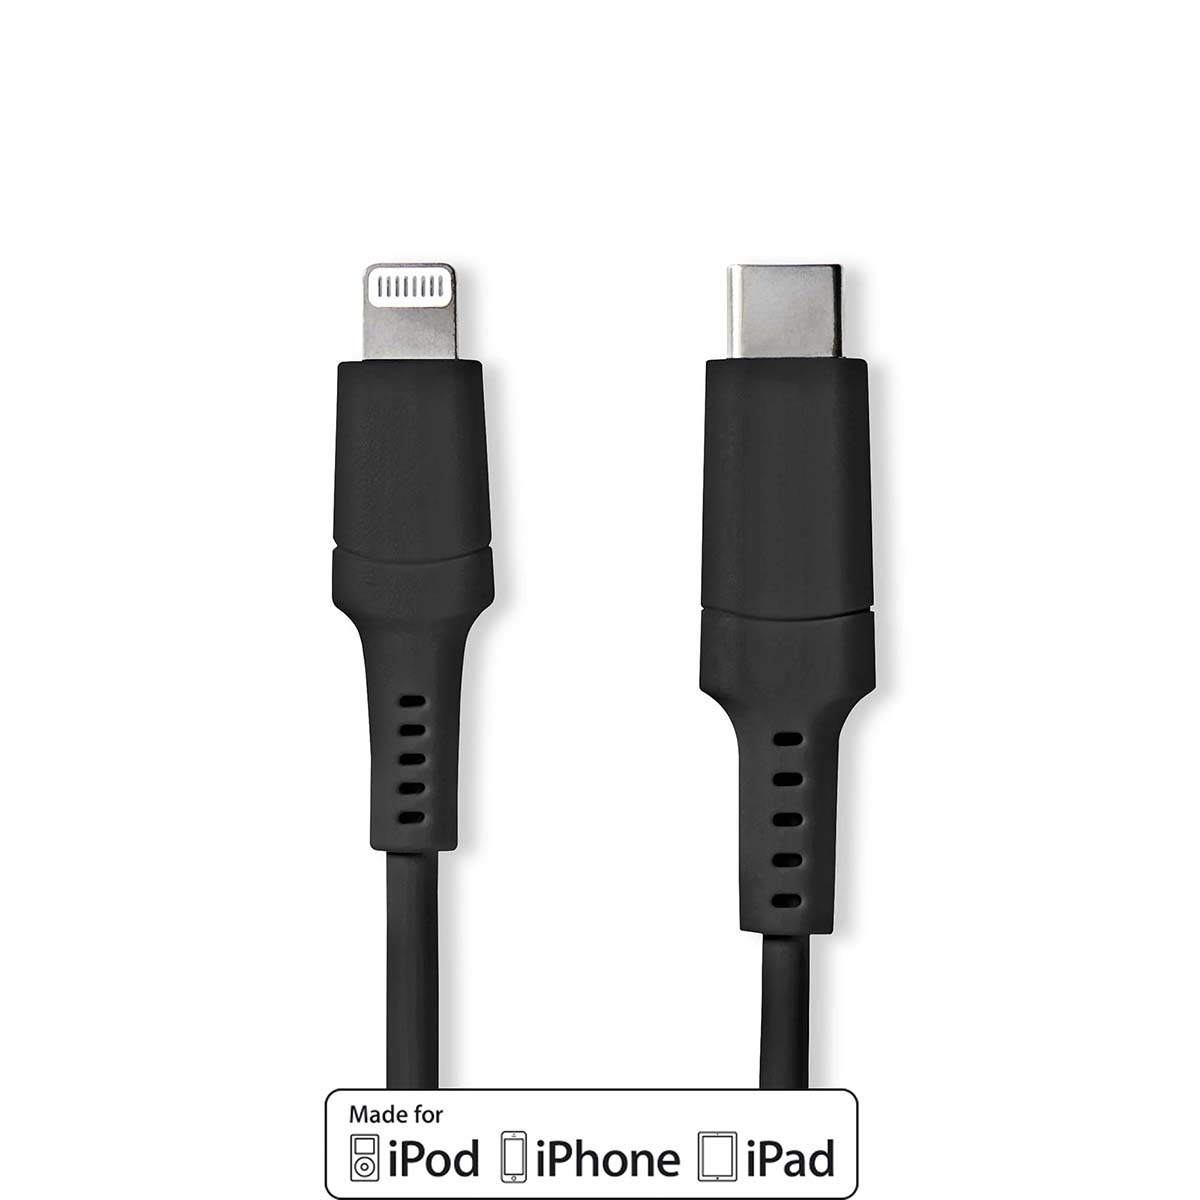 Boek slang Begeleiden Lightning Kabel | USB 2.0 | Apple Lightning 8-Pins | USB-C™ Male 